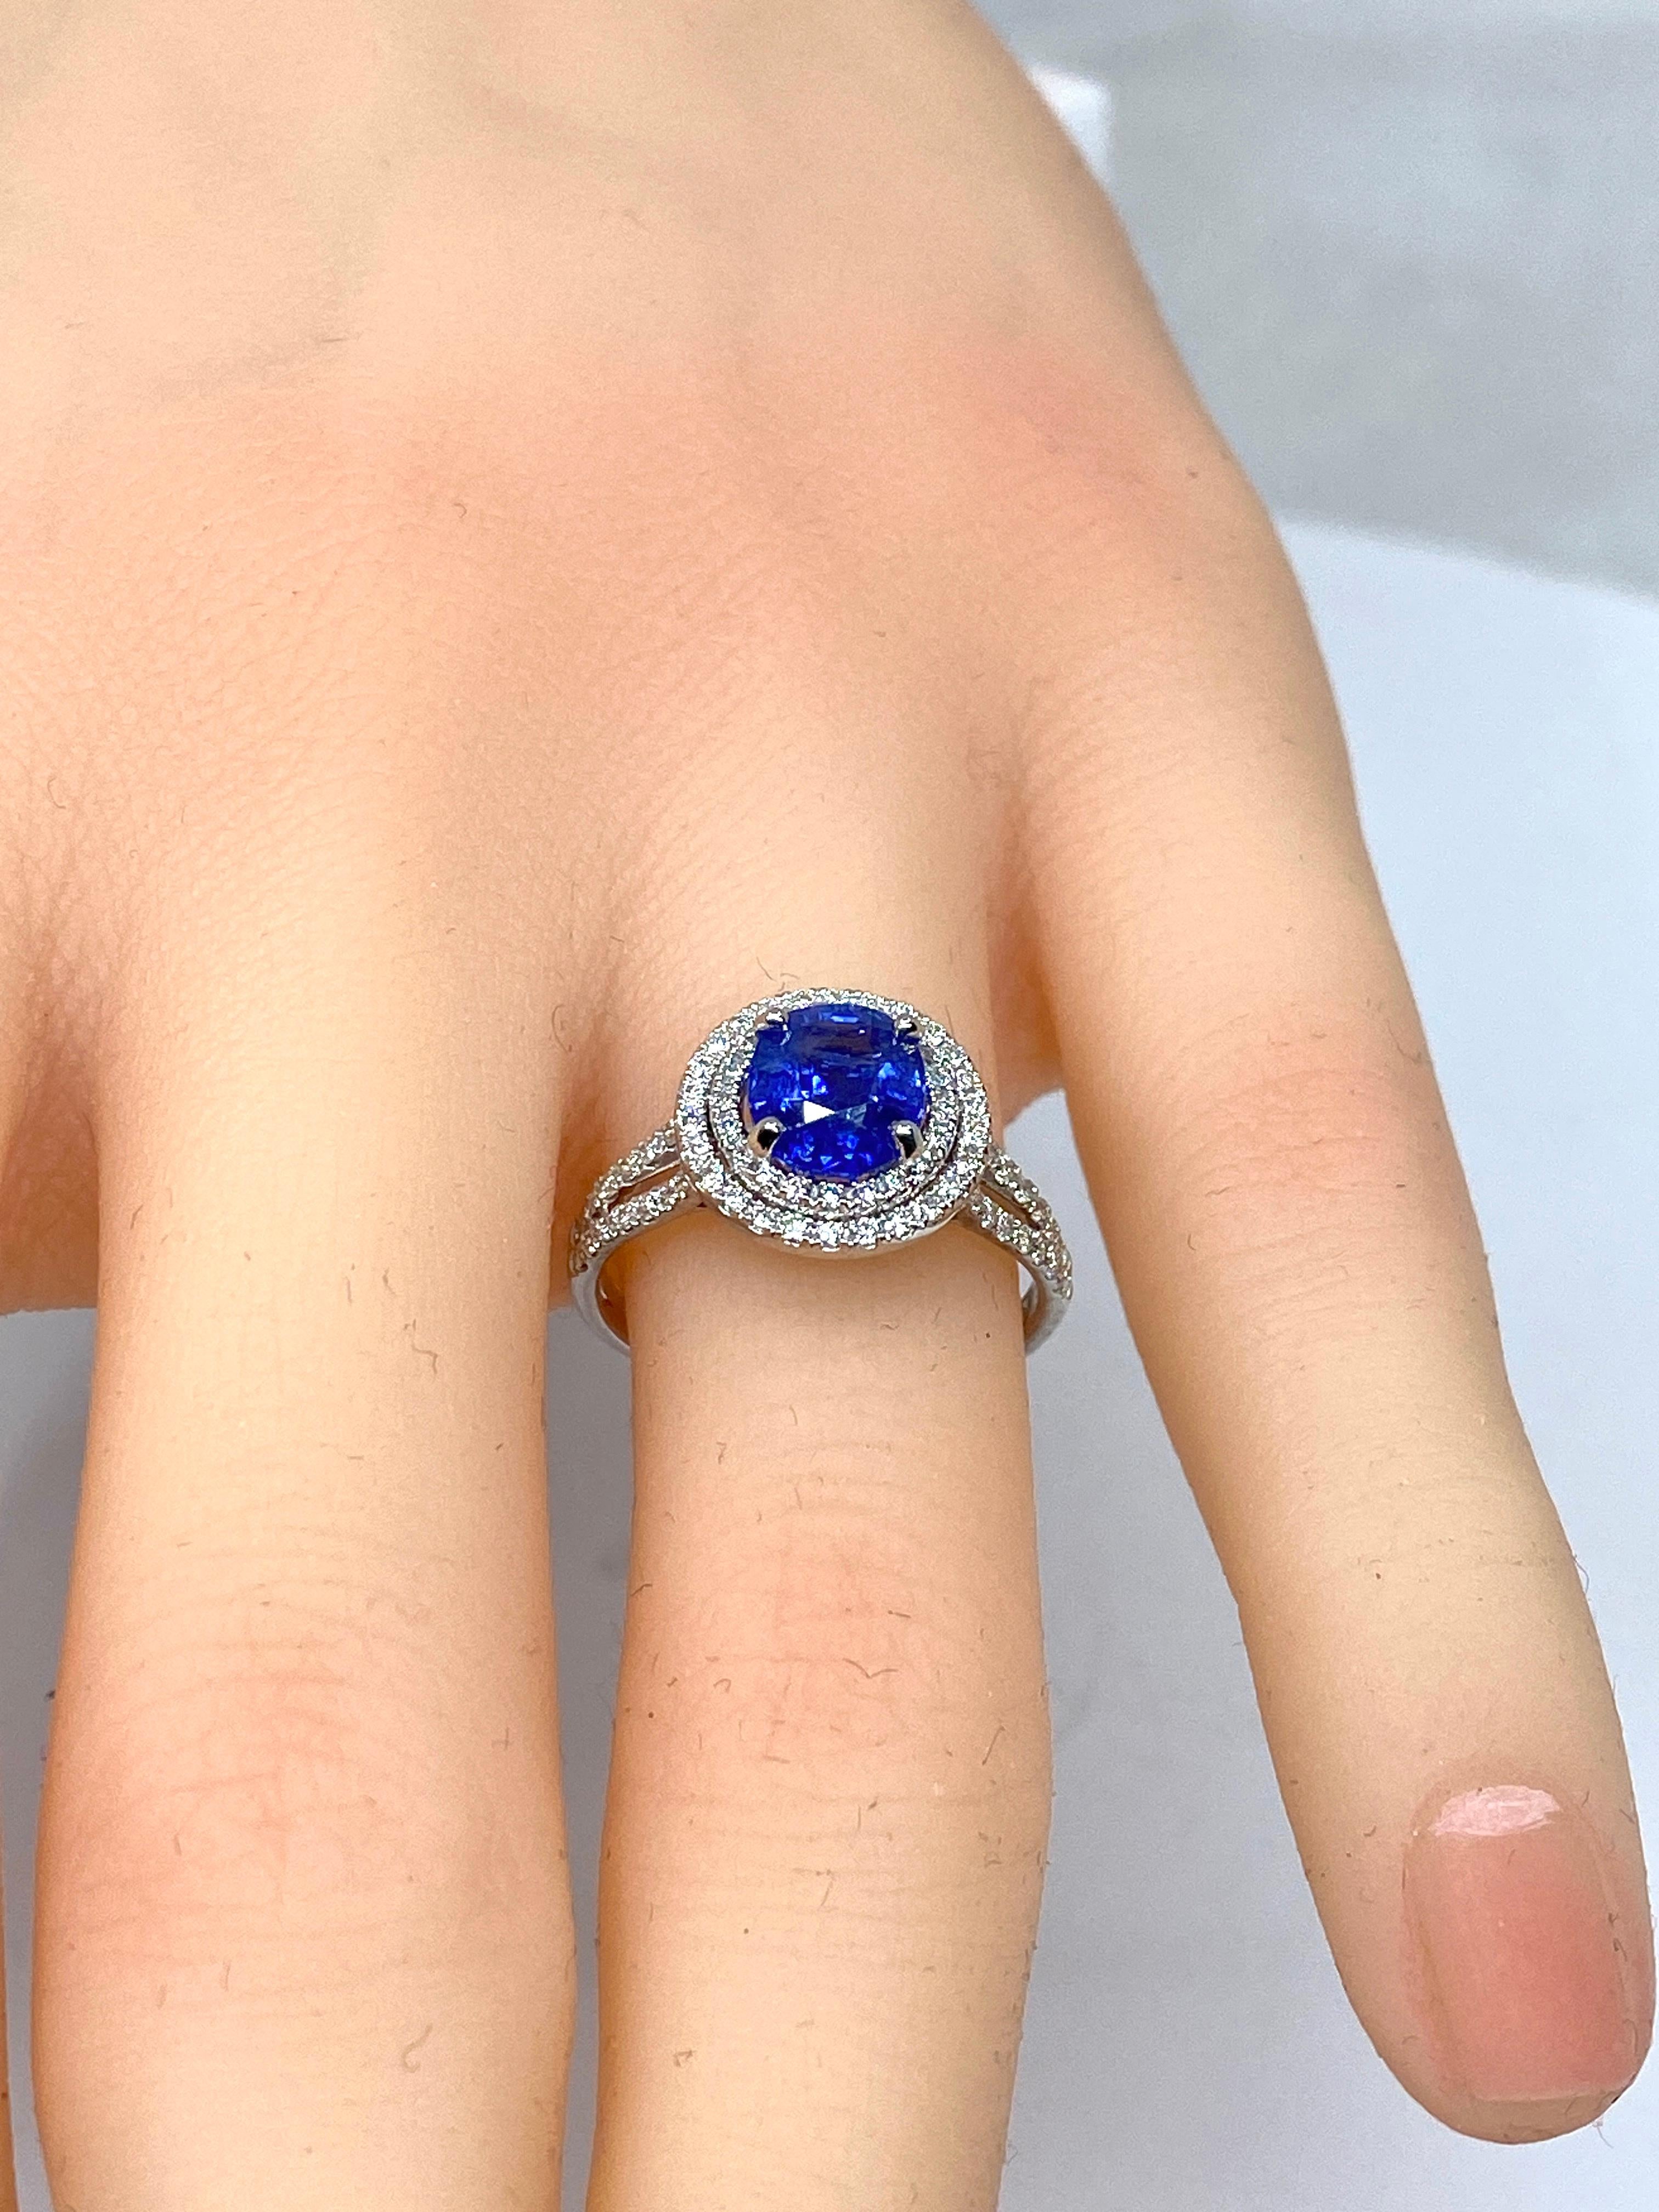 Ravissante bague de fiançailles en or 18 carats ornée au centre d’un saphir d’une très belle couleur bleue roi pesant : 1.56 carat, dans un double entourage de diamants de taille brillant de couleur G extra blanc. L’anneau est également serti de